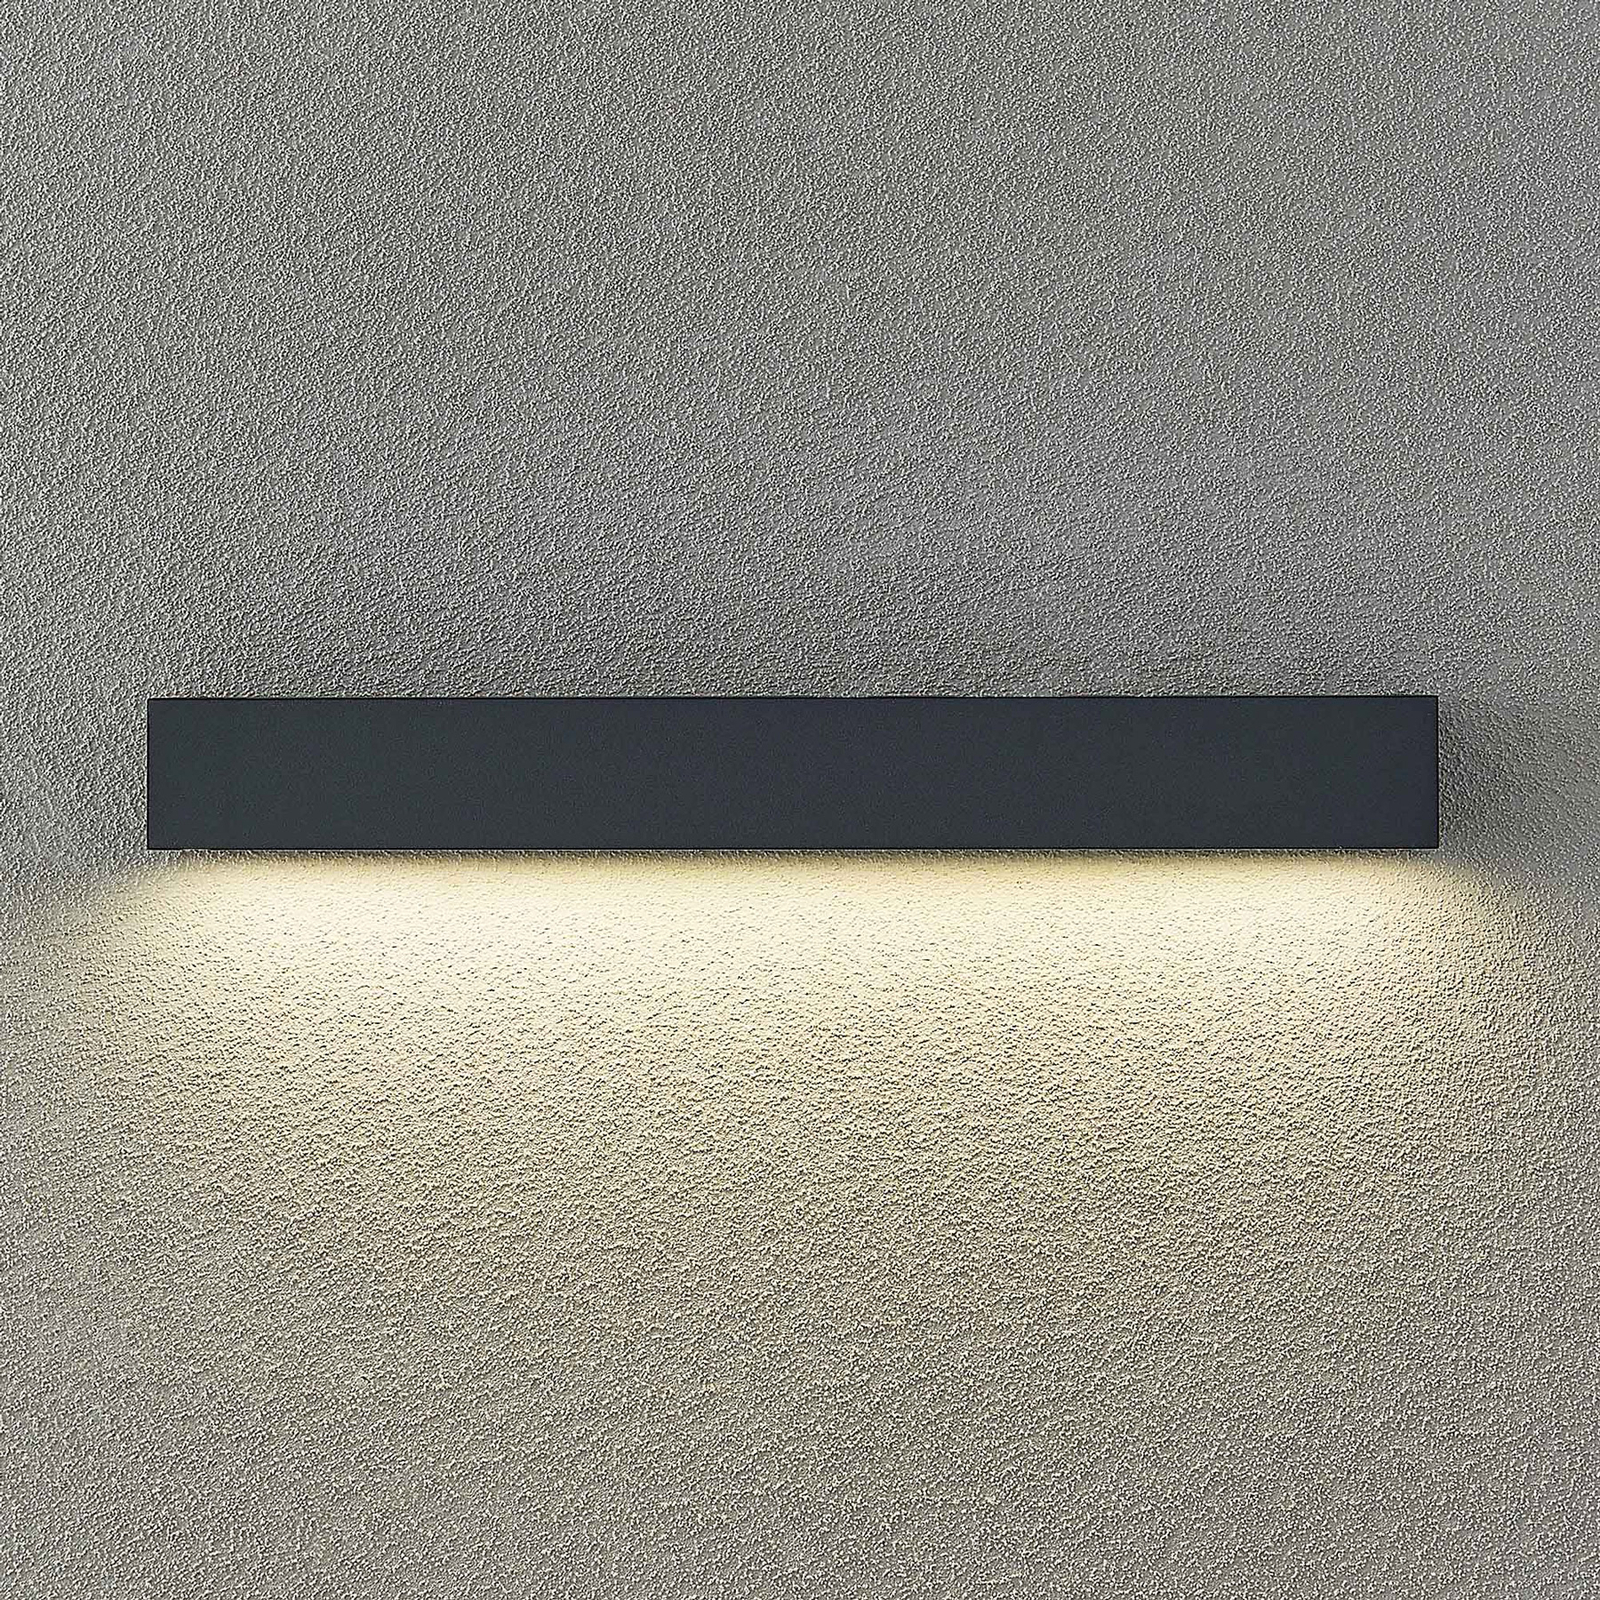 Arcchio LED venkovní nástěnné svítidlo Lengo, CCT, 50 cm, 1 světlo,